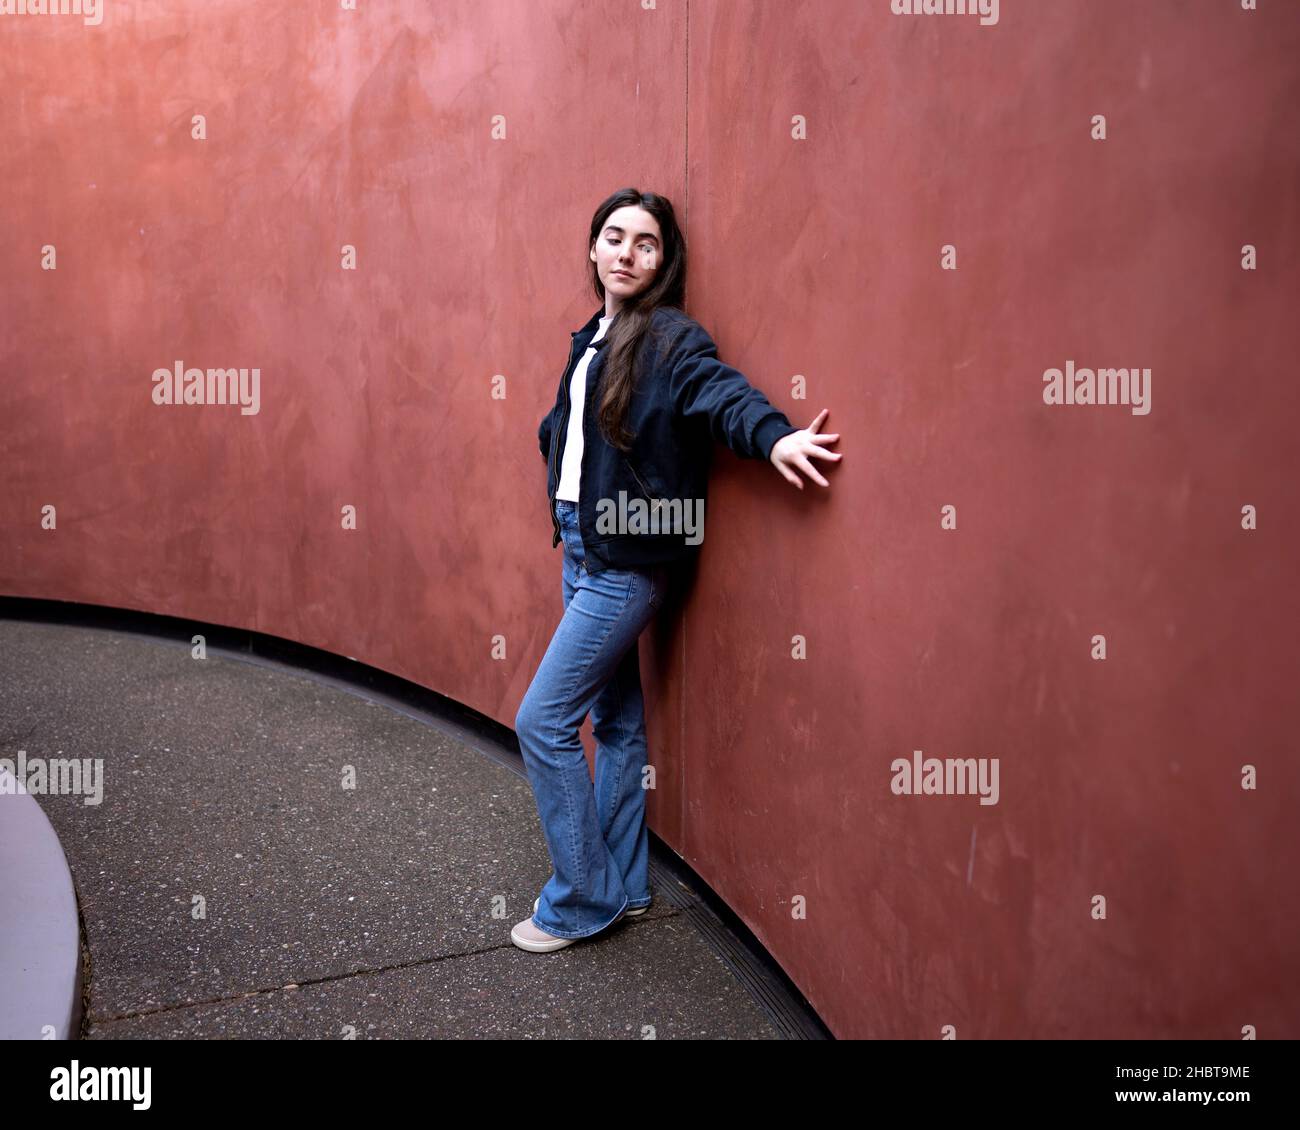 Teenager, die gegen eine rostfarbene Wand schiebt Stockfoto